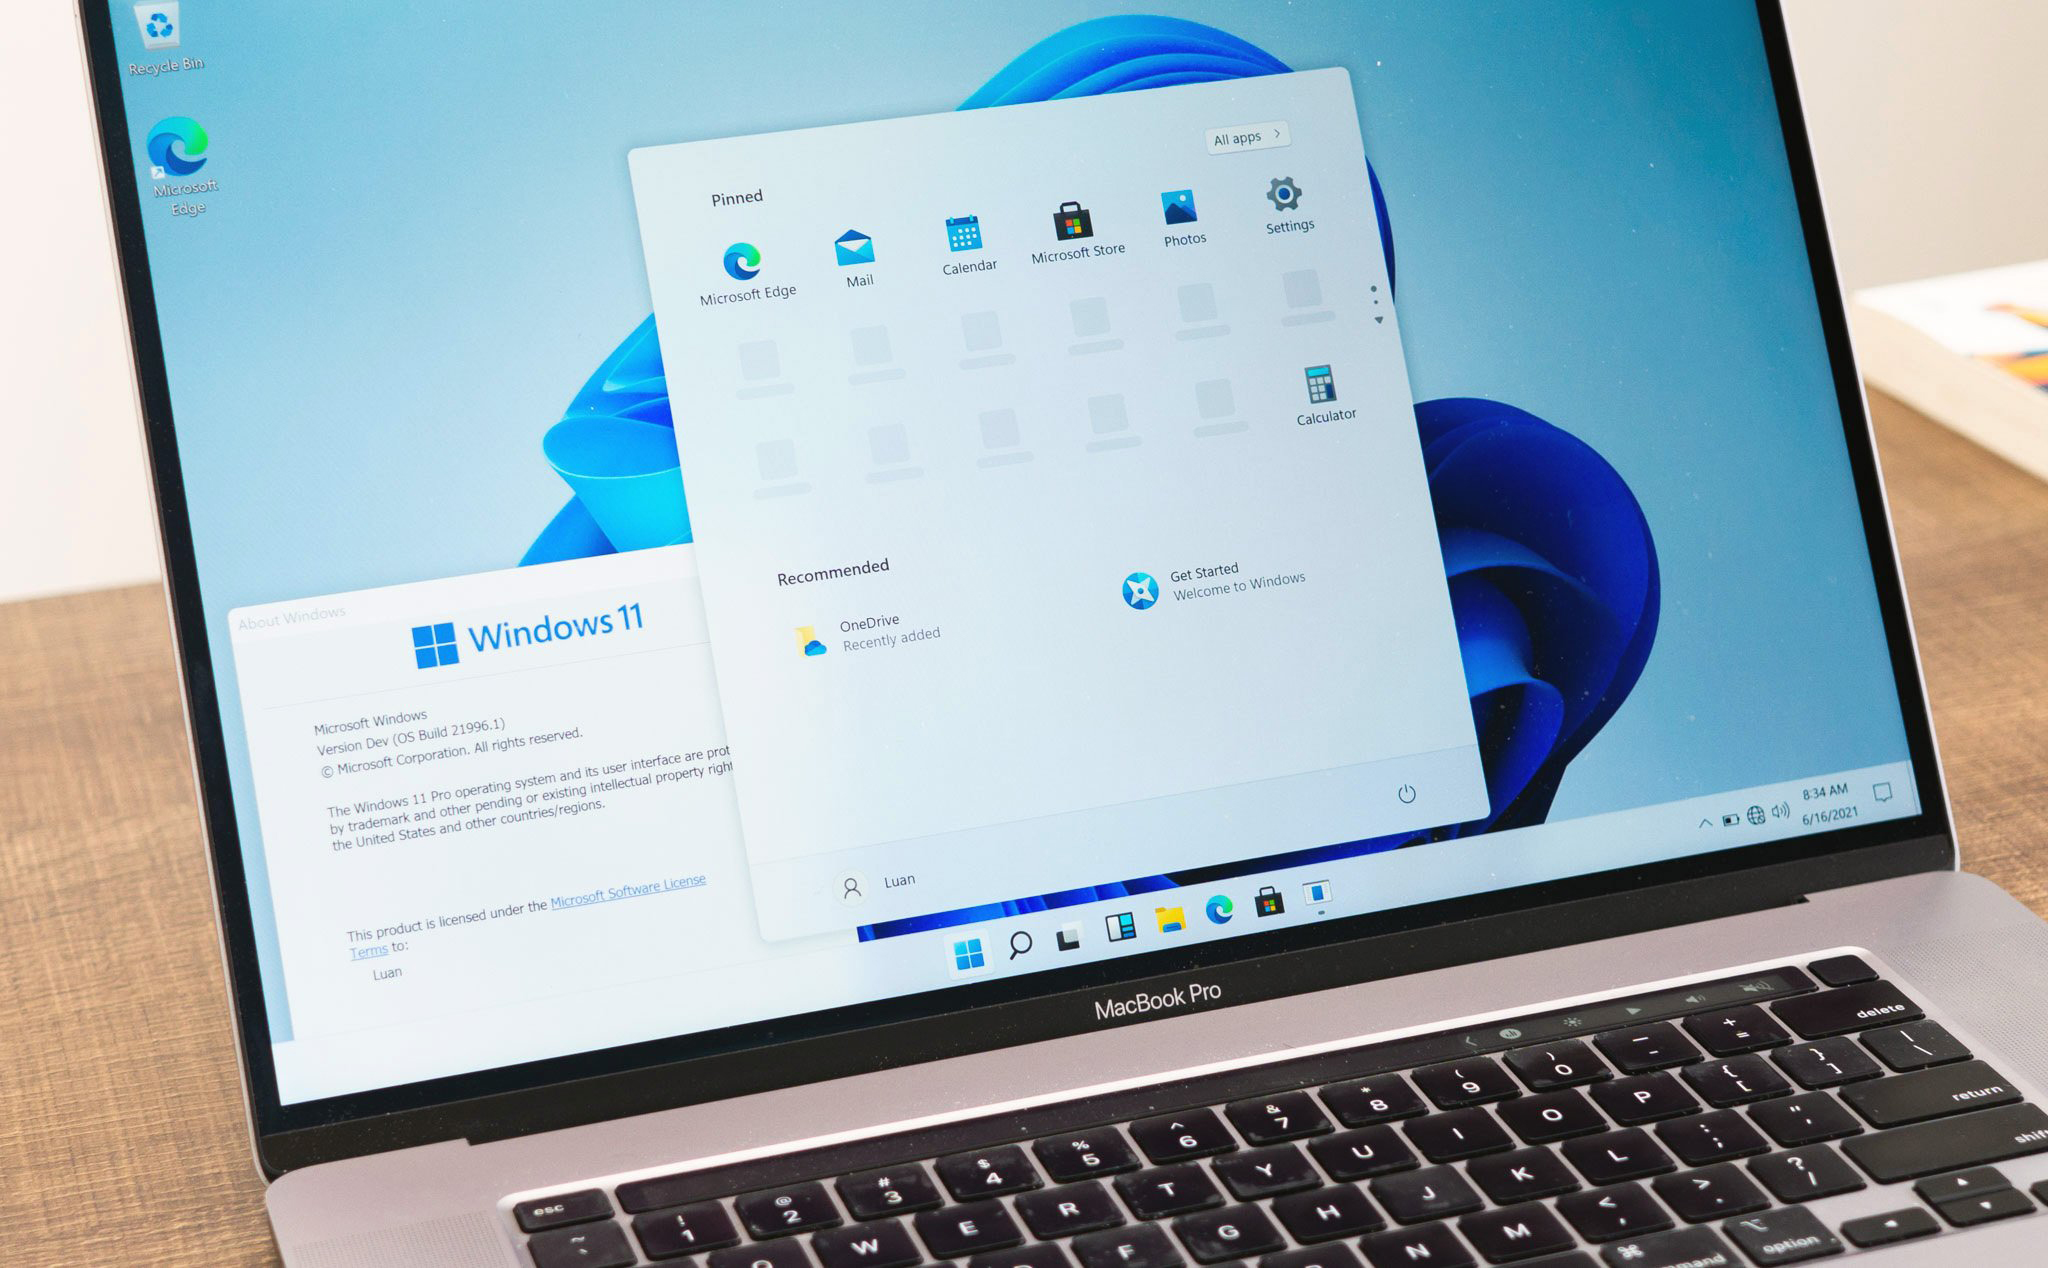 Người dùng Windows 7/8/8.1 sẽ có thể cập nhật Windows 11 miễn phí, không cần mua lại bản quyền